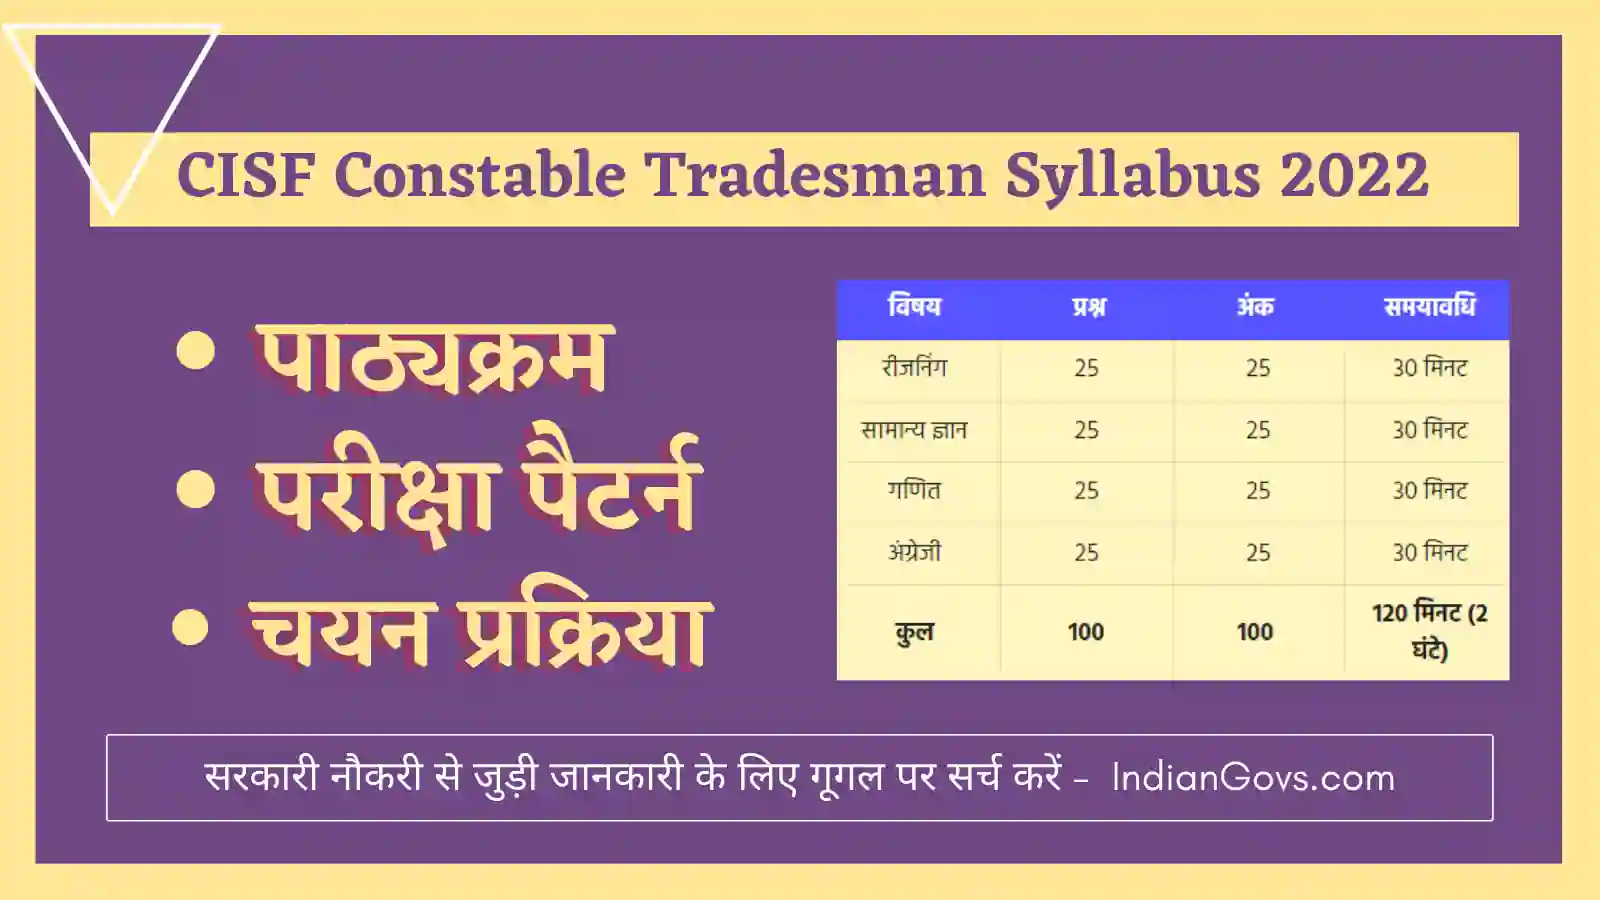 CISF Constable Tradesman Syllabus 2022 in Hindi